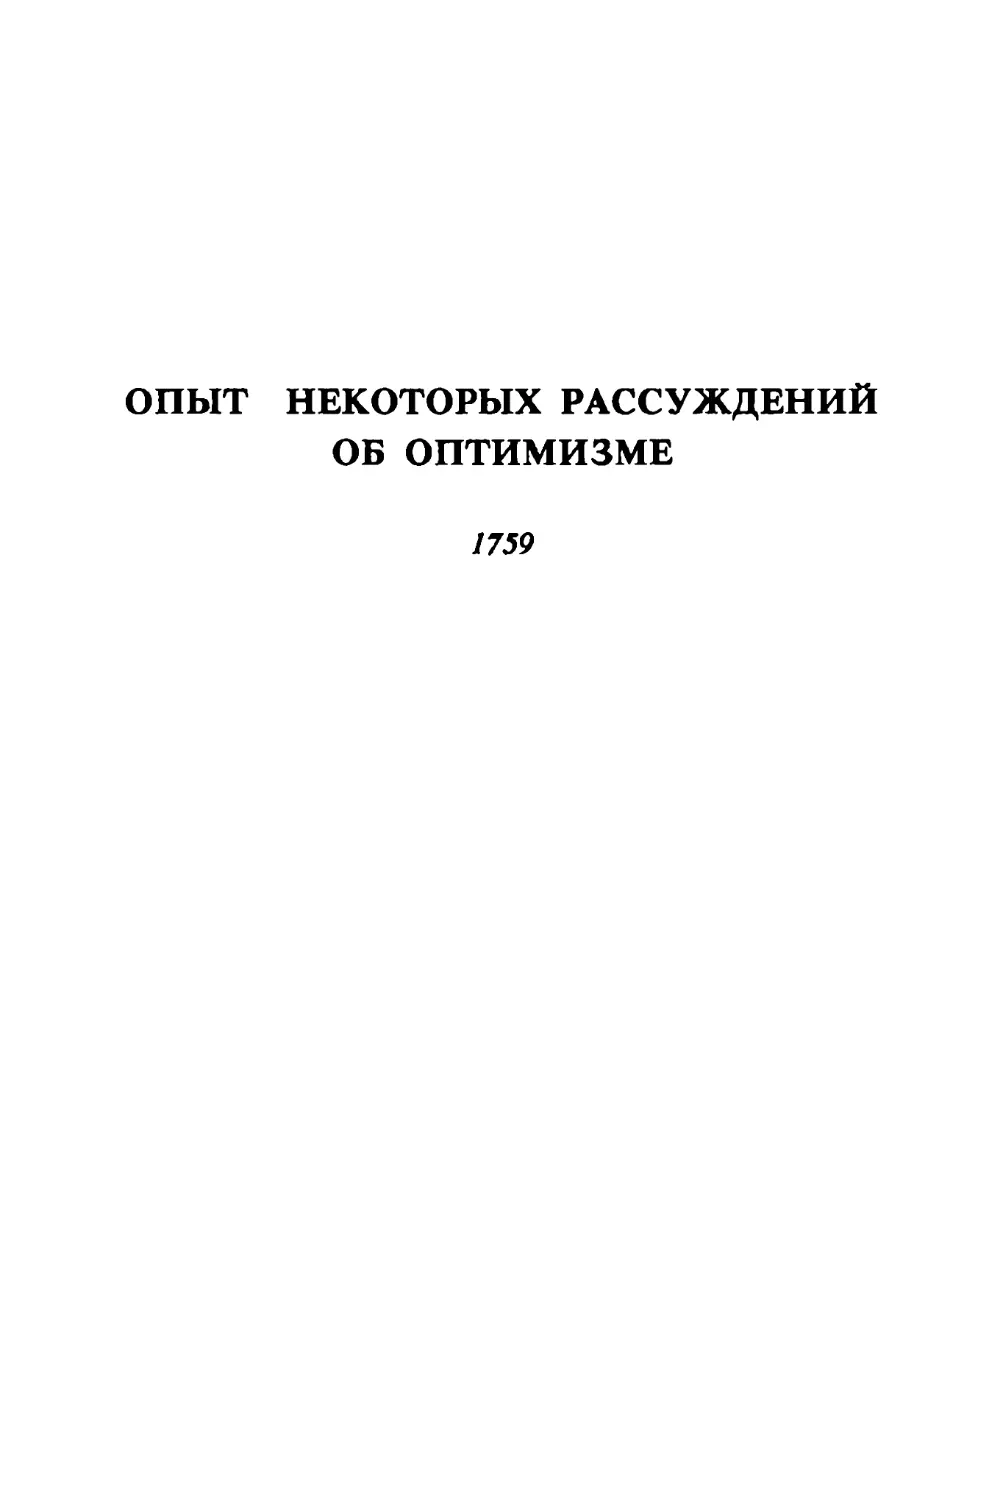 Опыт некоторых рассуждений об оптимизме. 1759